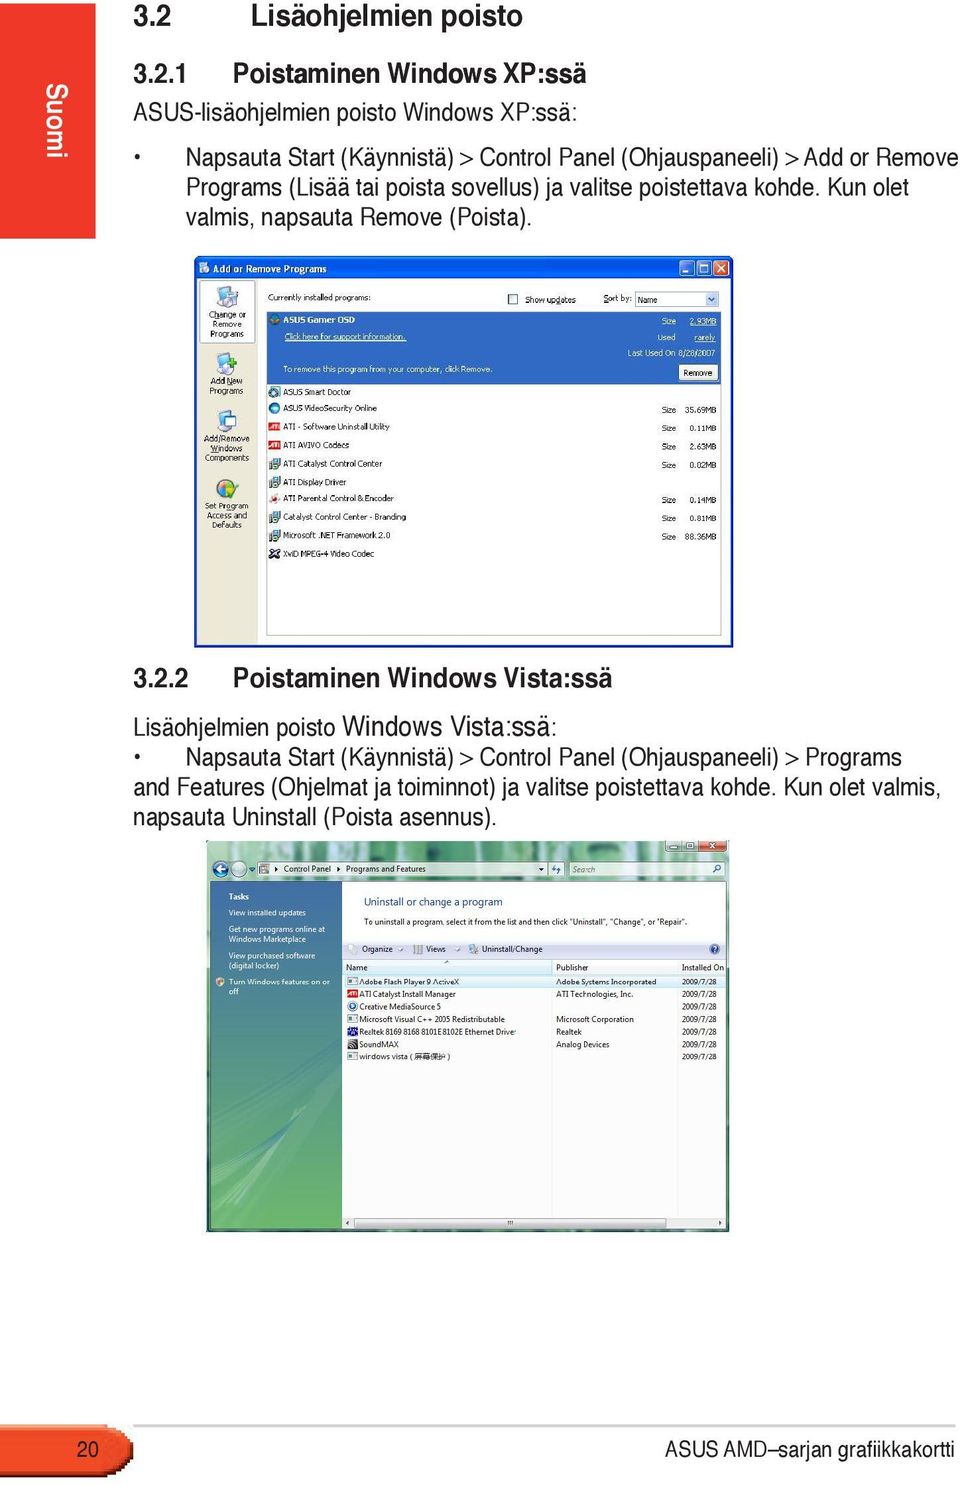 2 Poistaminen Windows Vista:ssä Lisäohjelmien poisto Windows Vista:ssä: Napsauta Start (Käynnistä) > Control Panel (Ohjauspaneeli) > Programs and